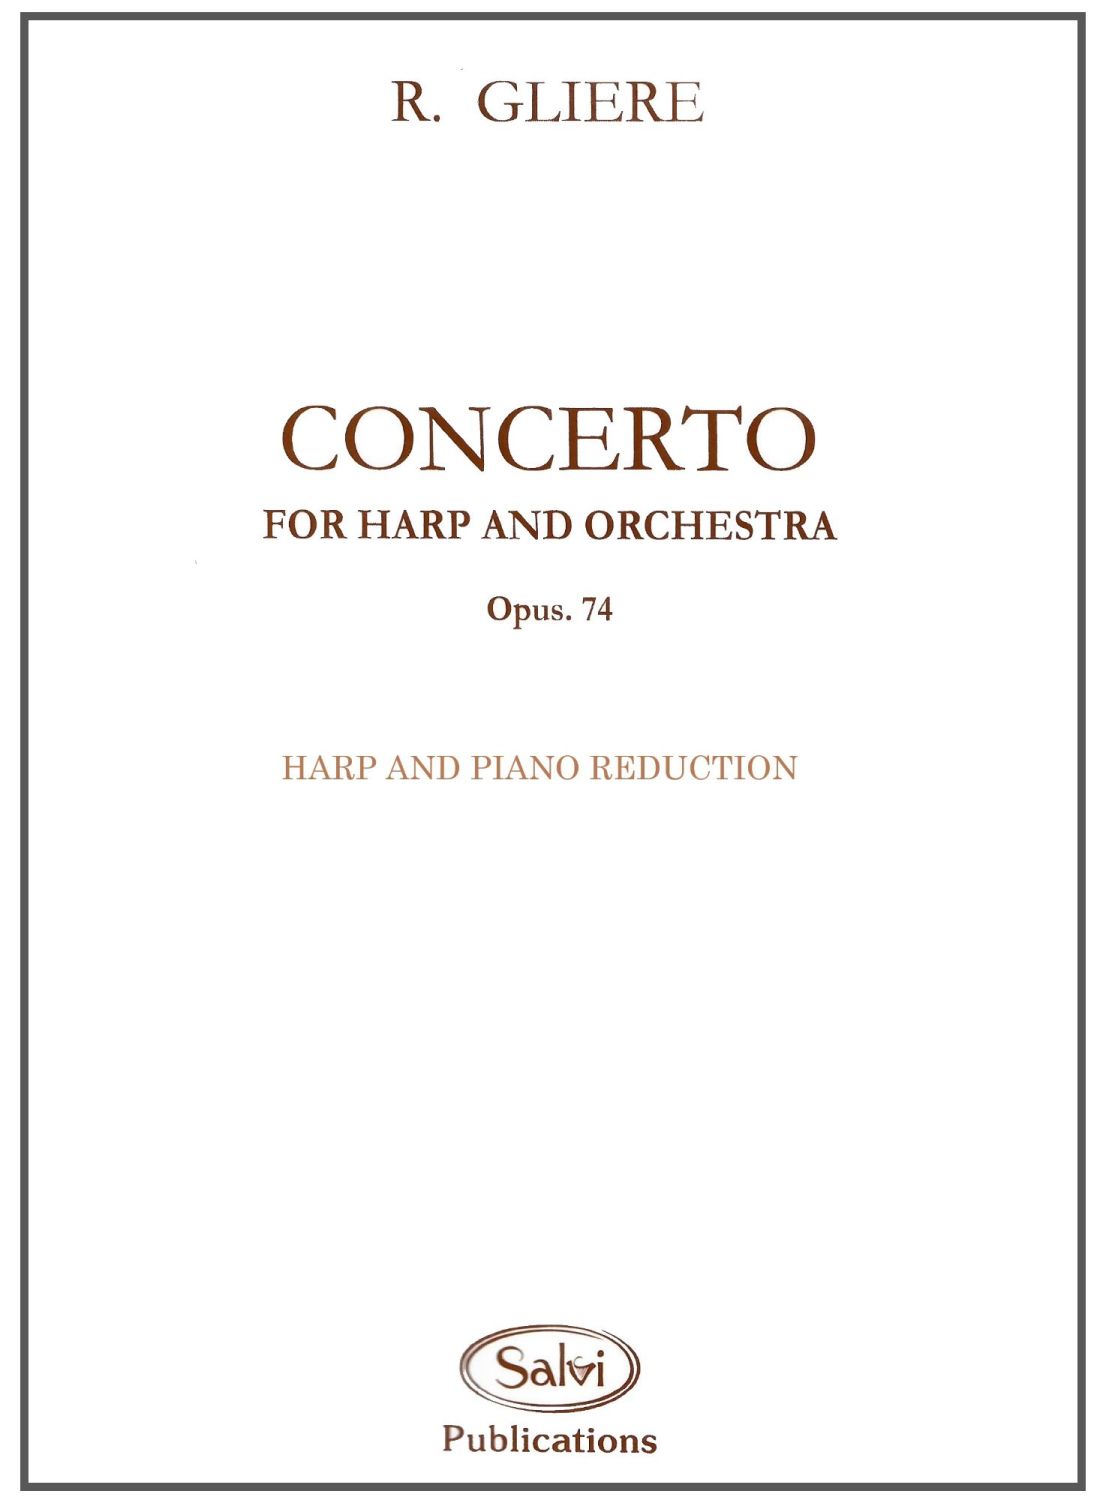 Concerto for Harp & Orchestra - Op.74 - Gliere